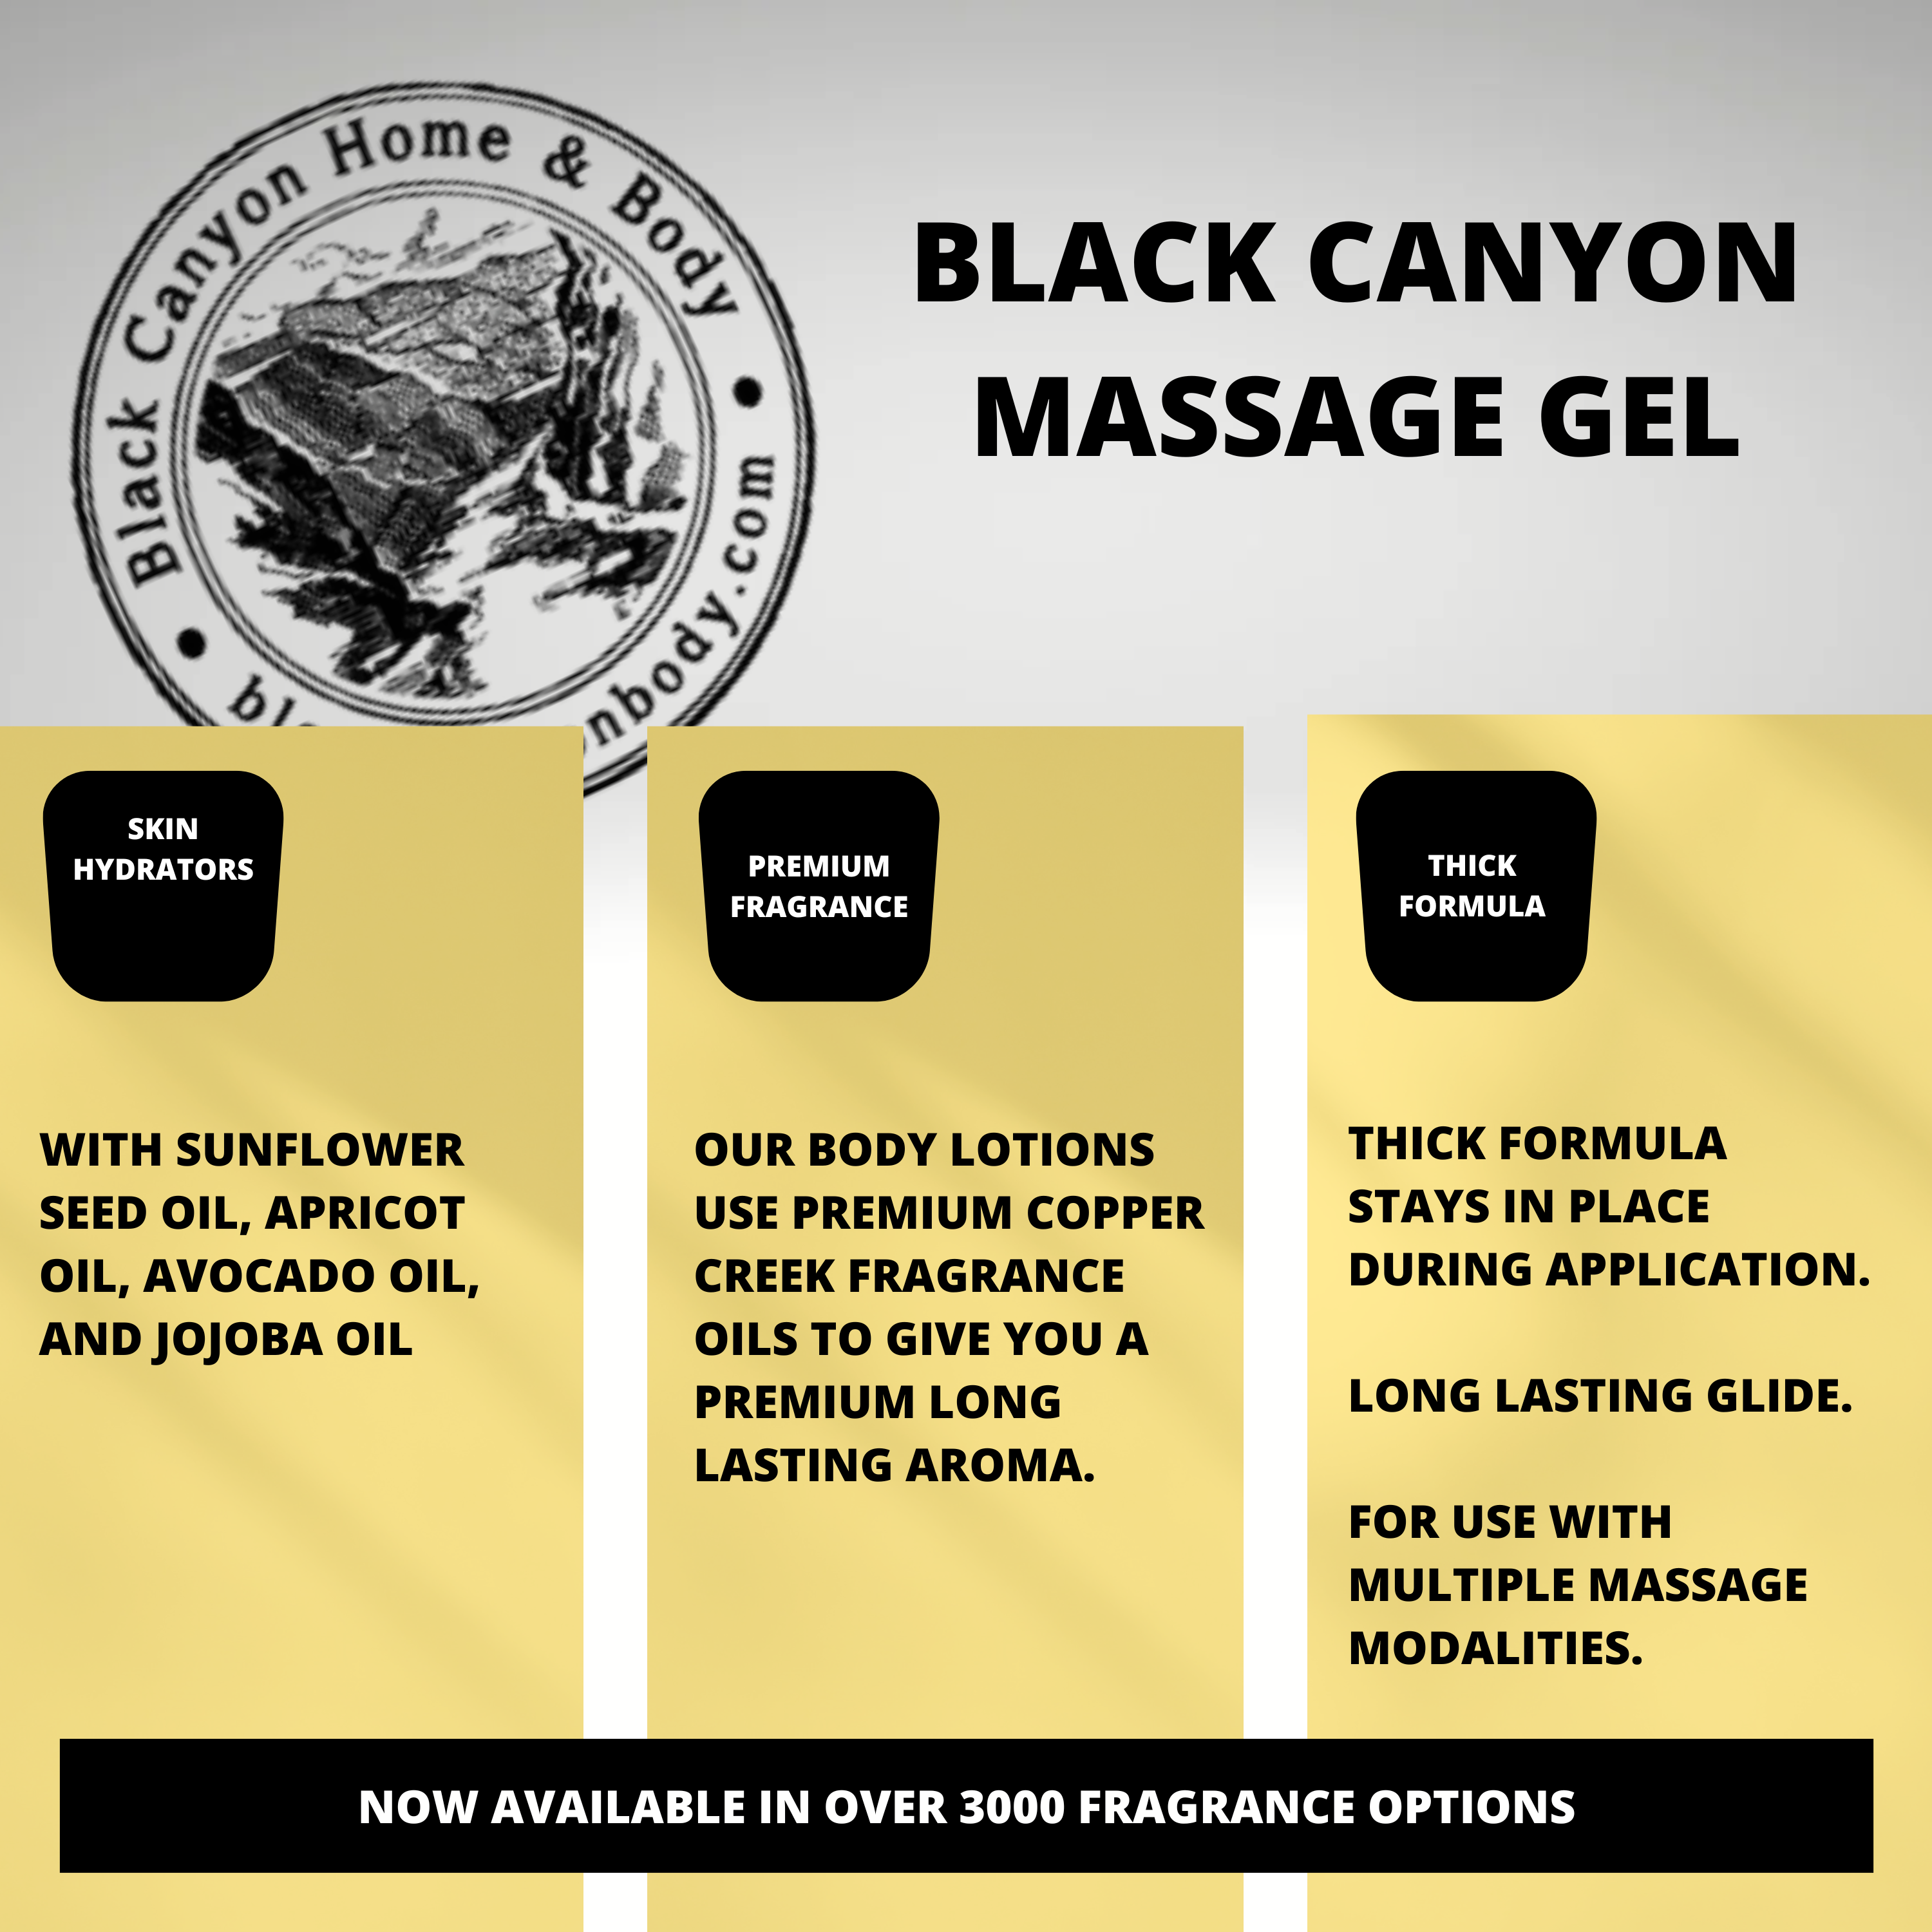 Black Canyon Creme Brulee Scented Massage Gel